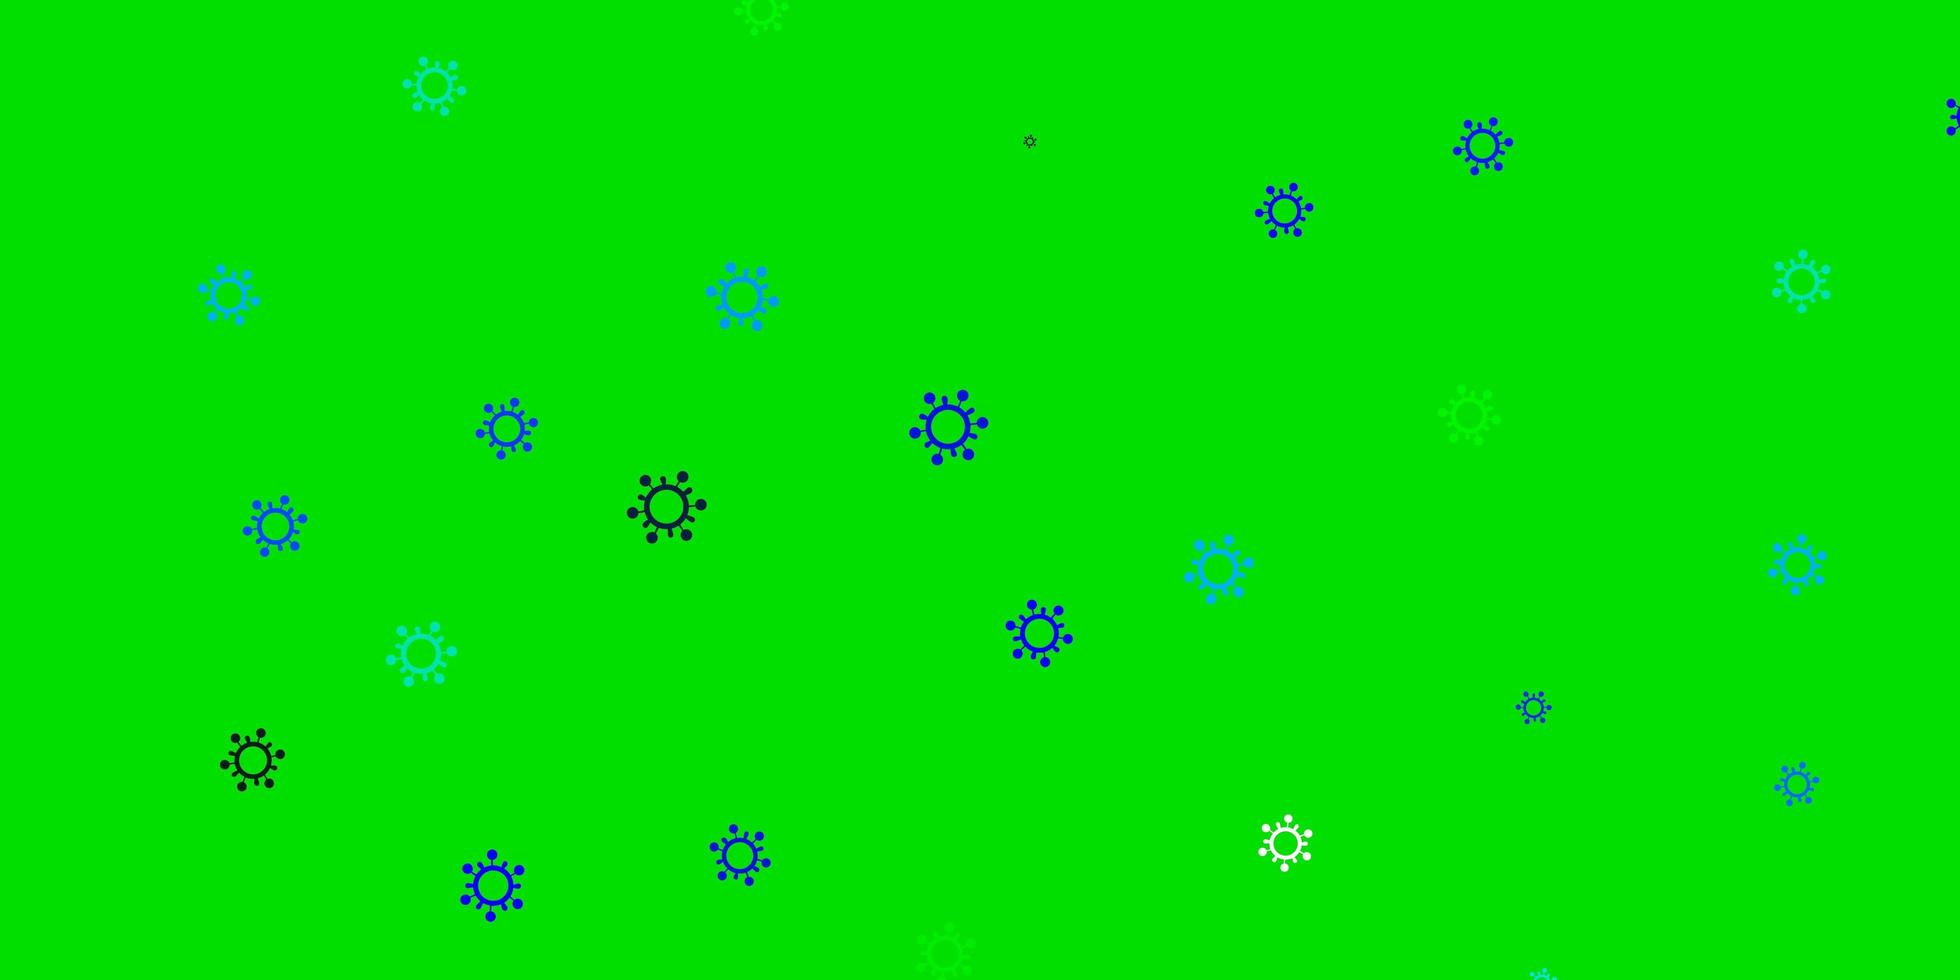 ljusblå, grön vektormall med influensatecken vektor